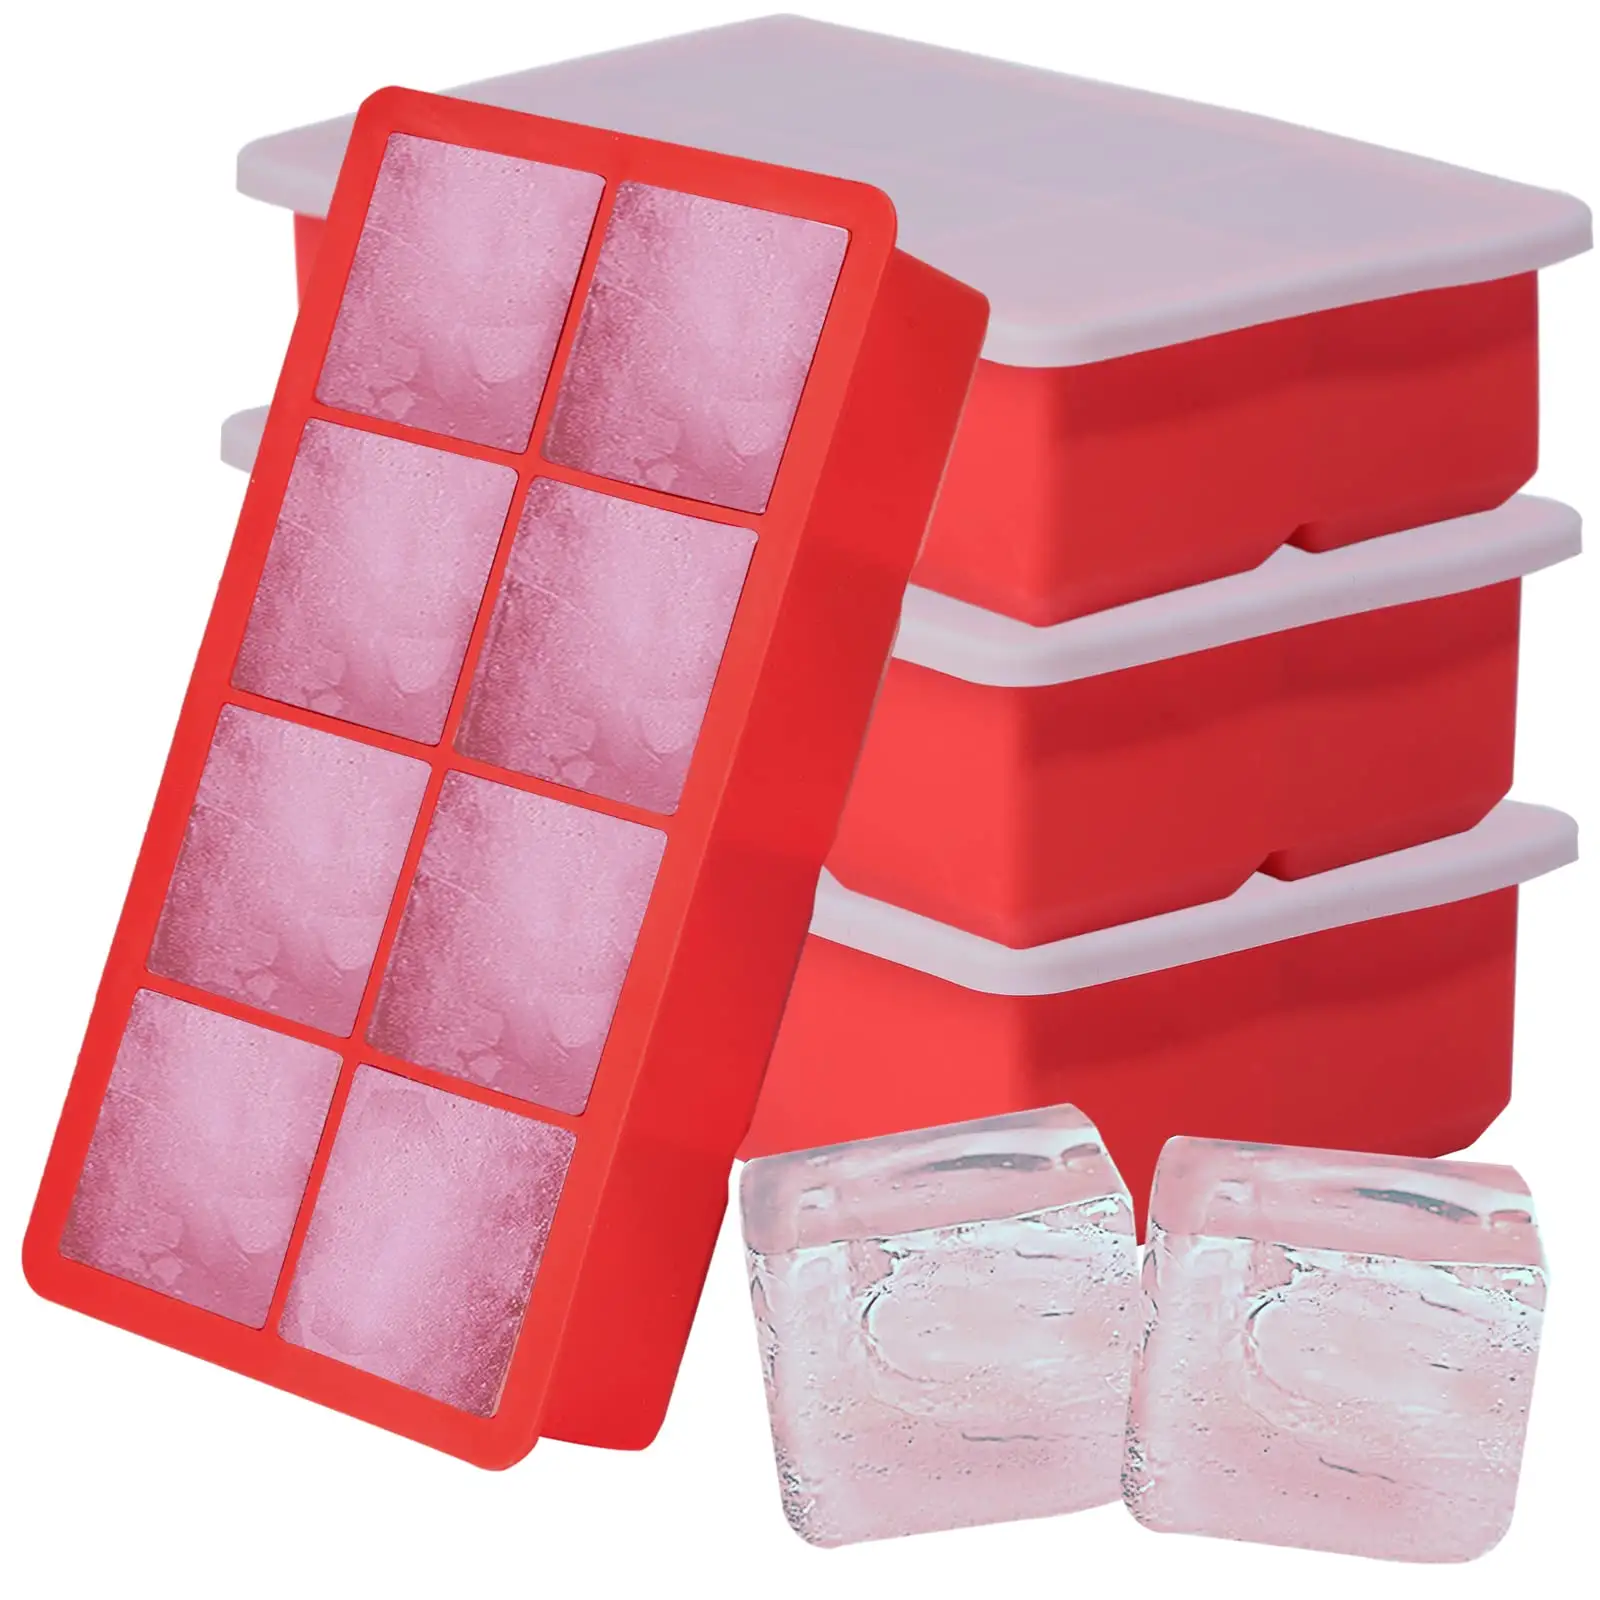 Venda quente 8-Cavity Silicone Grande Quadrado Ice Cube Bandeja para Whishy Resfria Bebidas com Tampa De Silicone Direto Da Fábrica